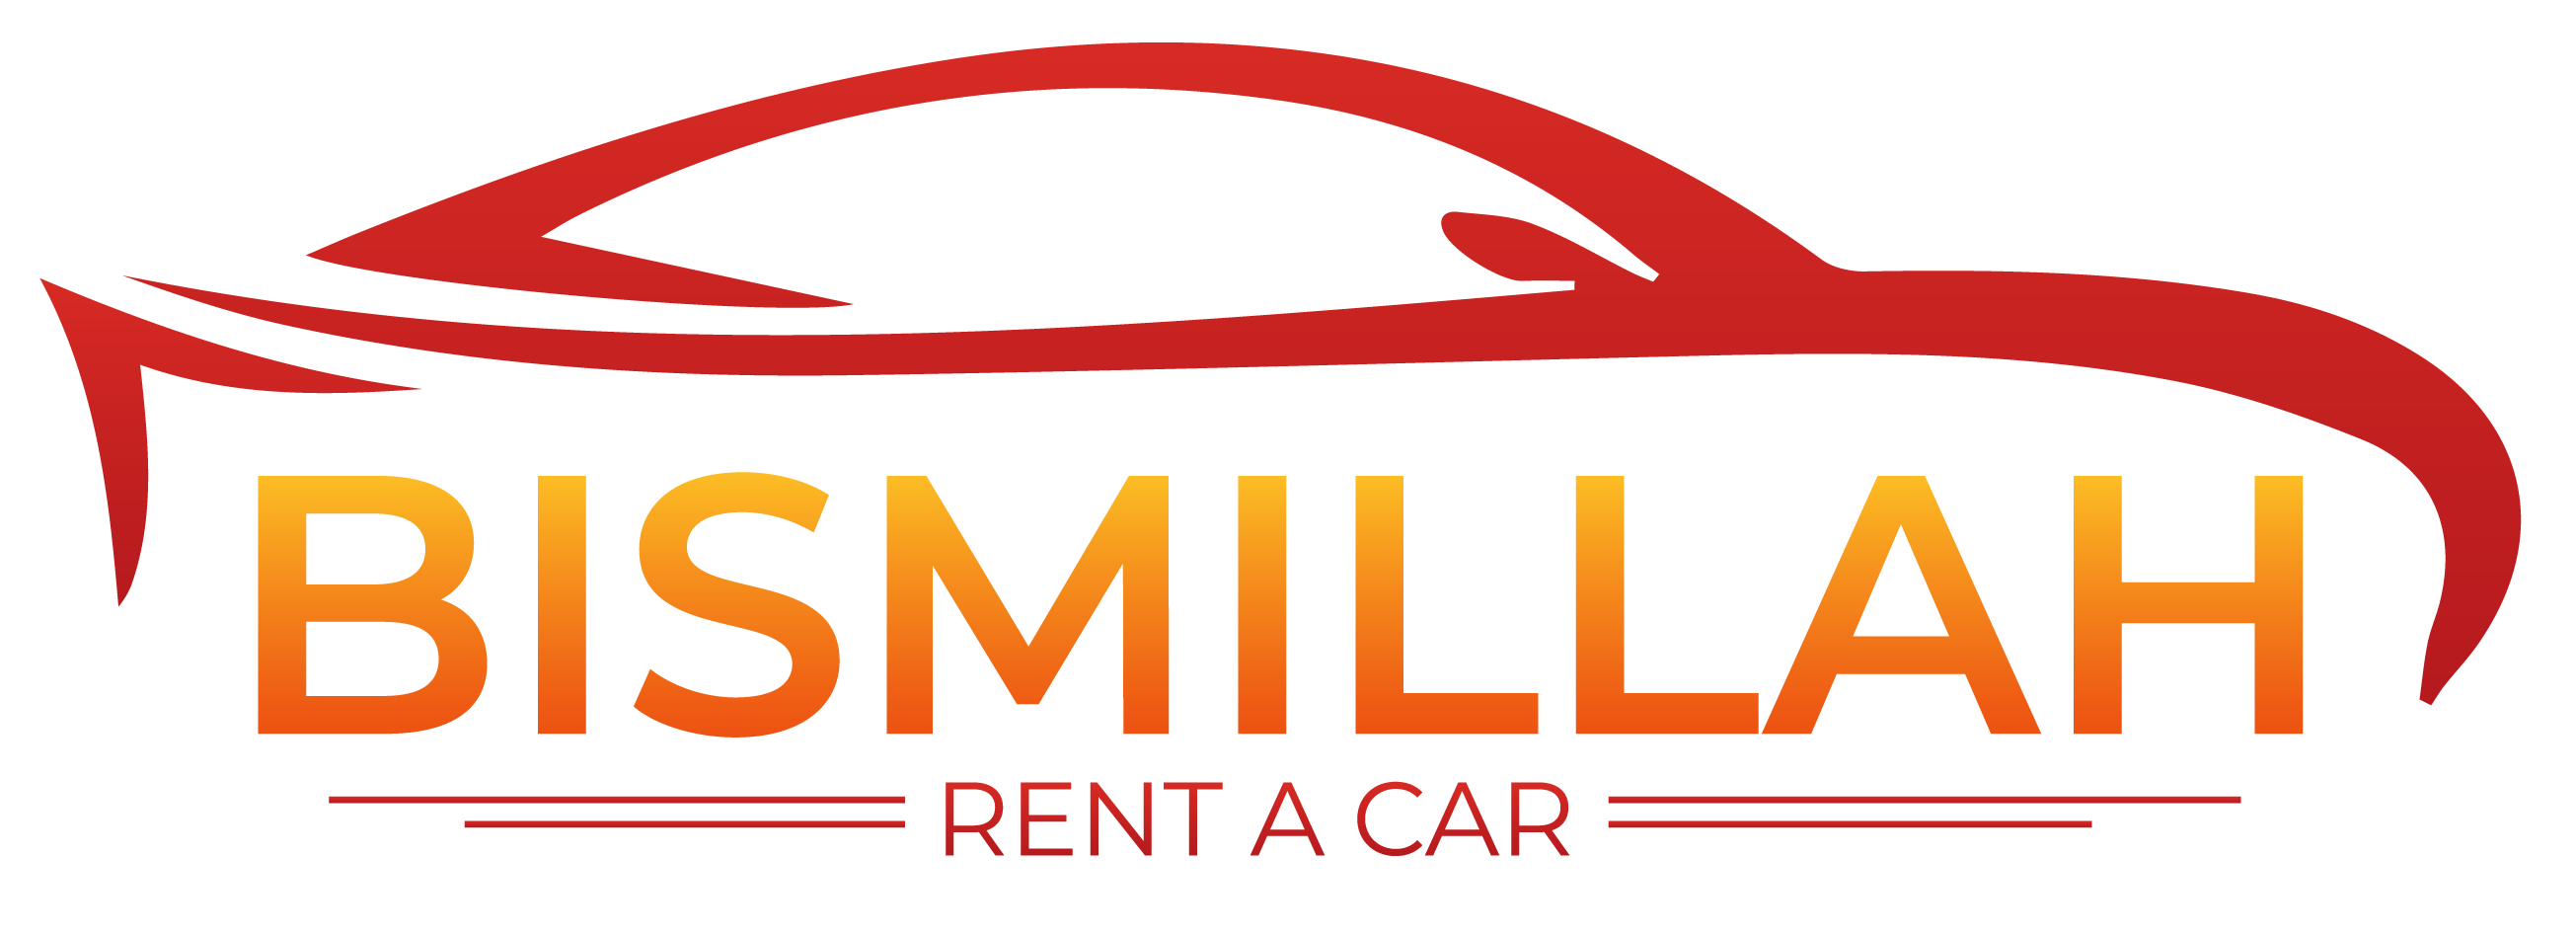 bismillah rent car, best car rental in chittagong